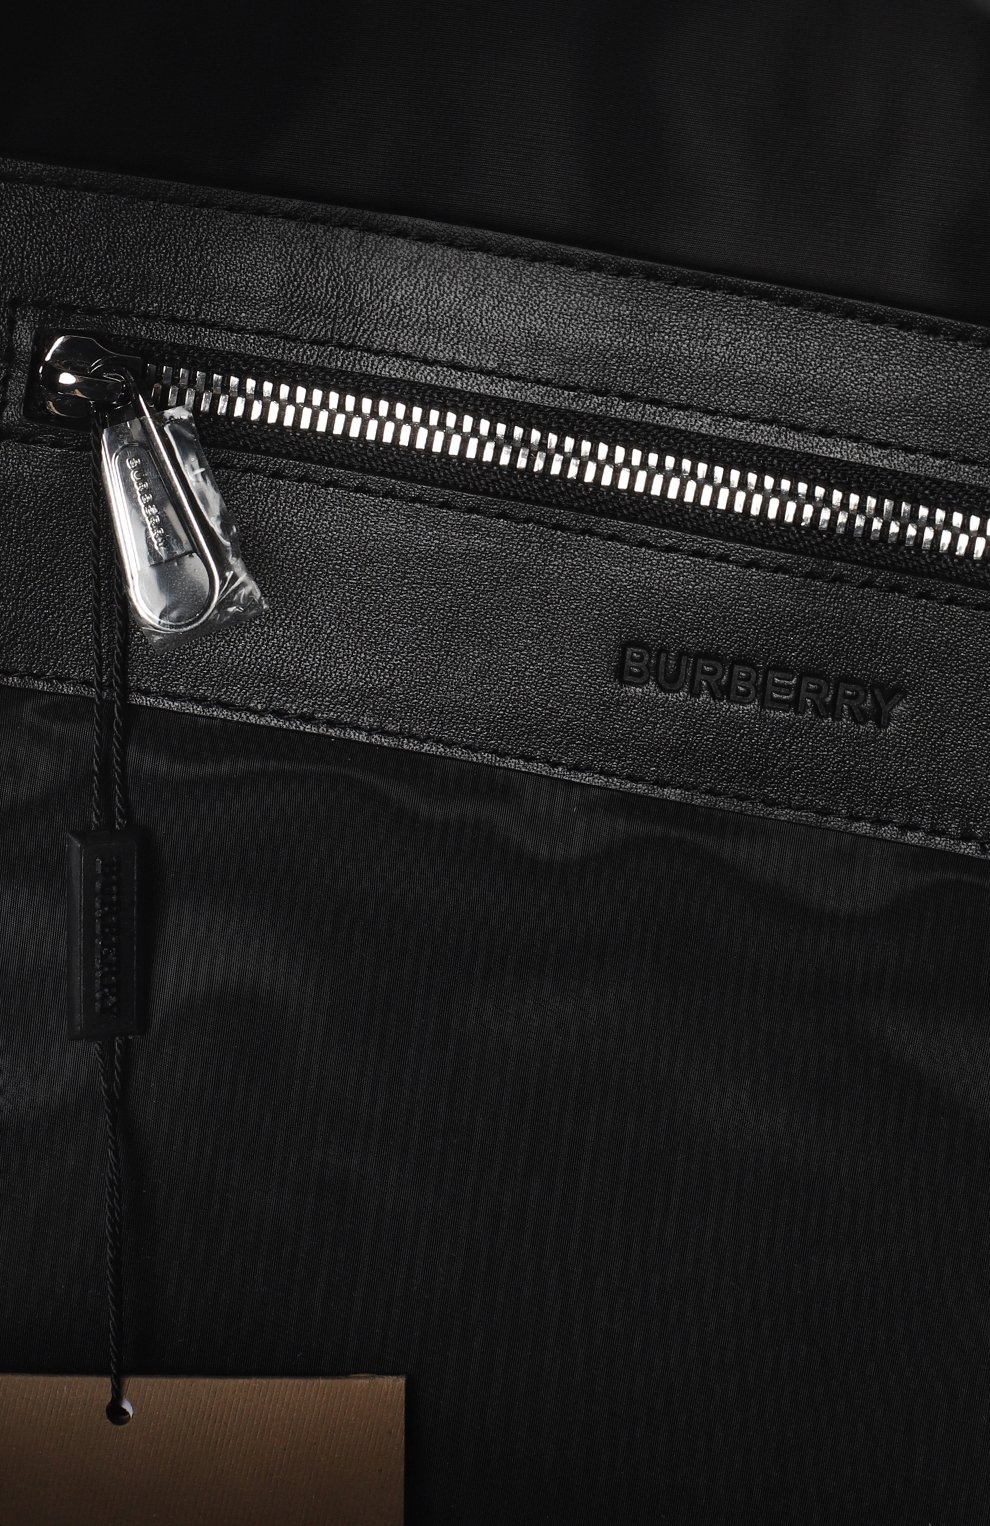 Рюкзак | Burberry | Чёрный - 7